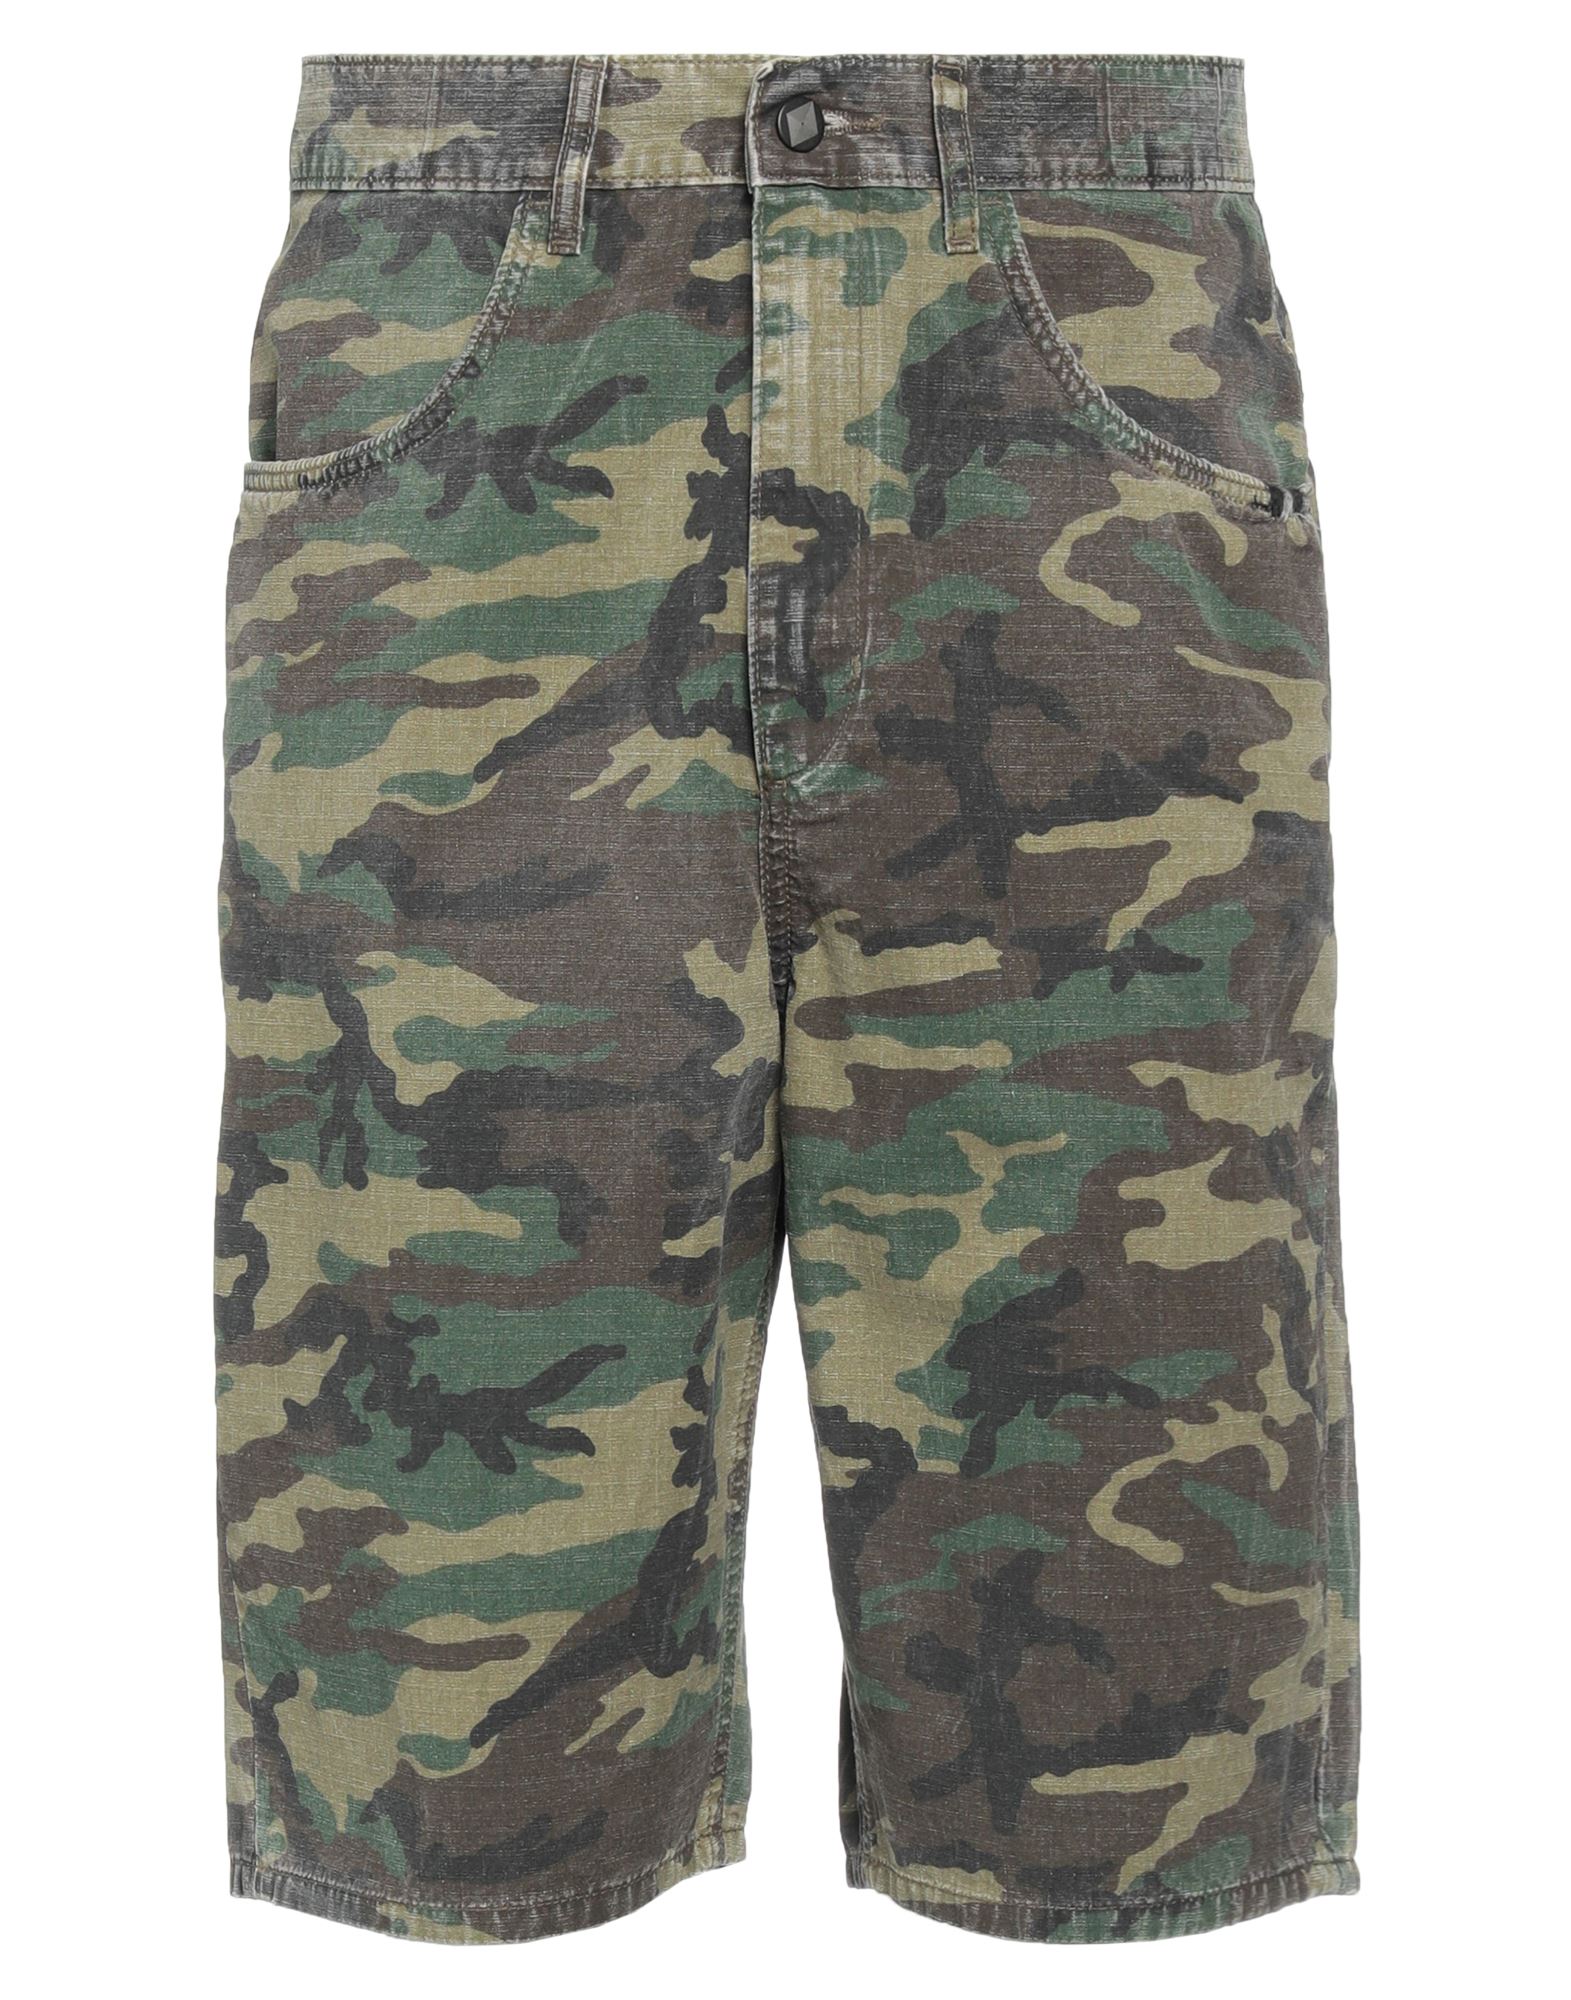 Amish Man Shorts & Bermuda Shorts Military Green Size 31 Cotton